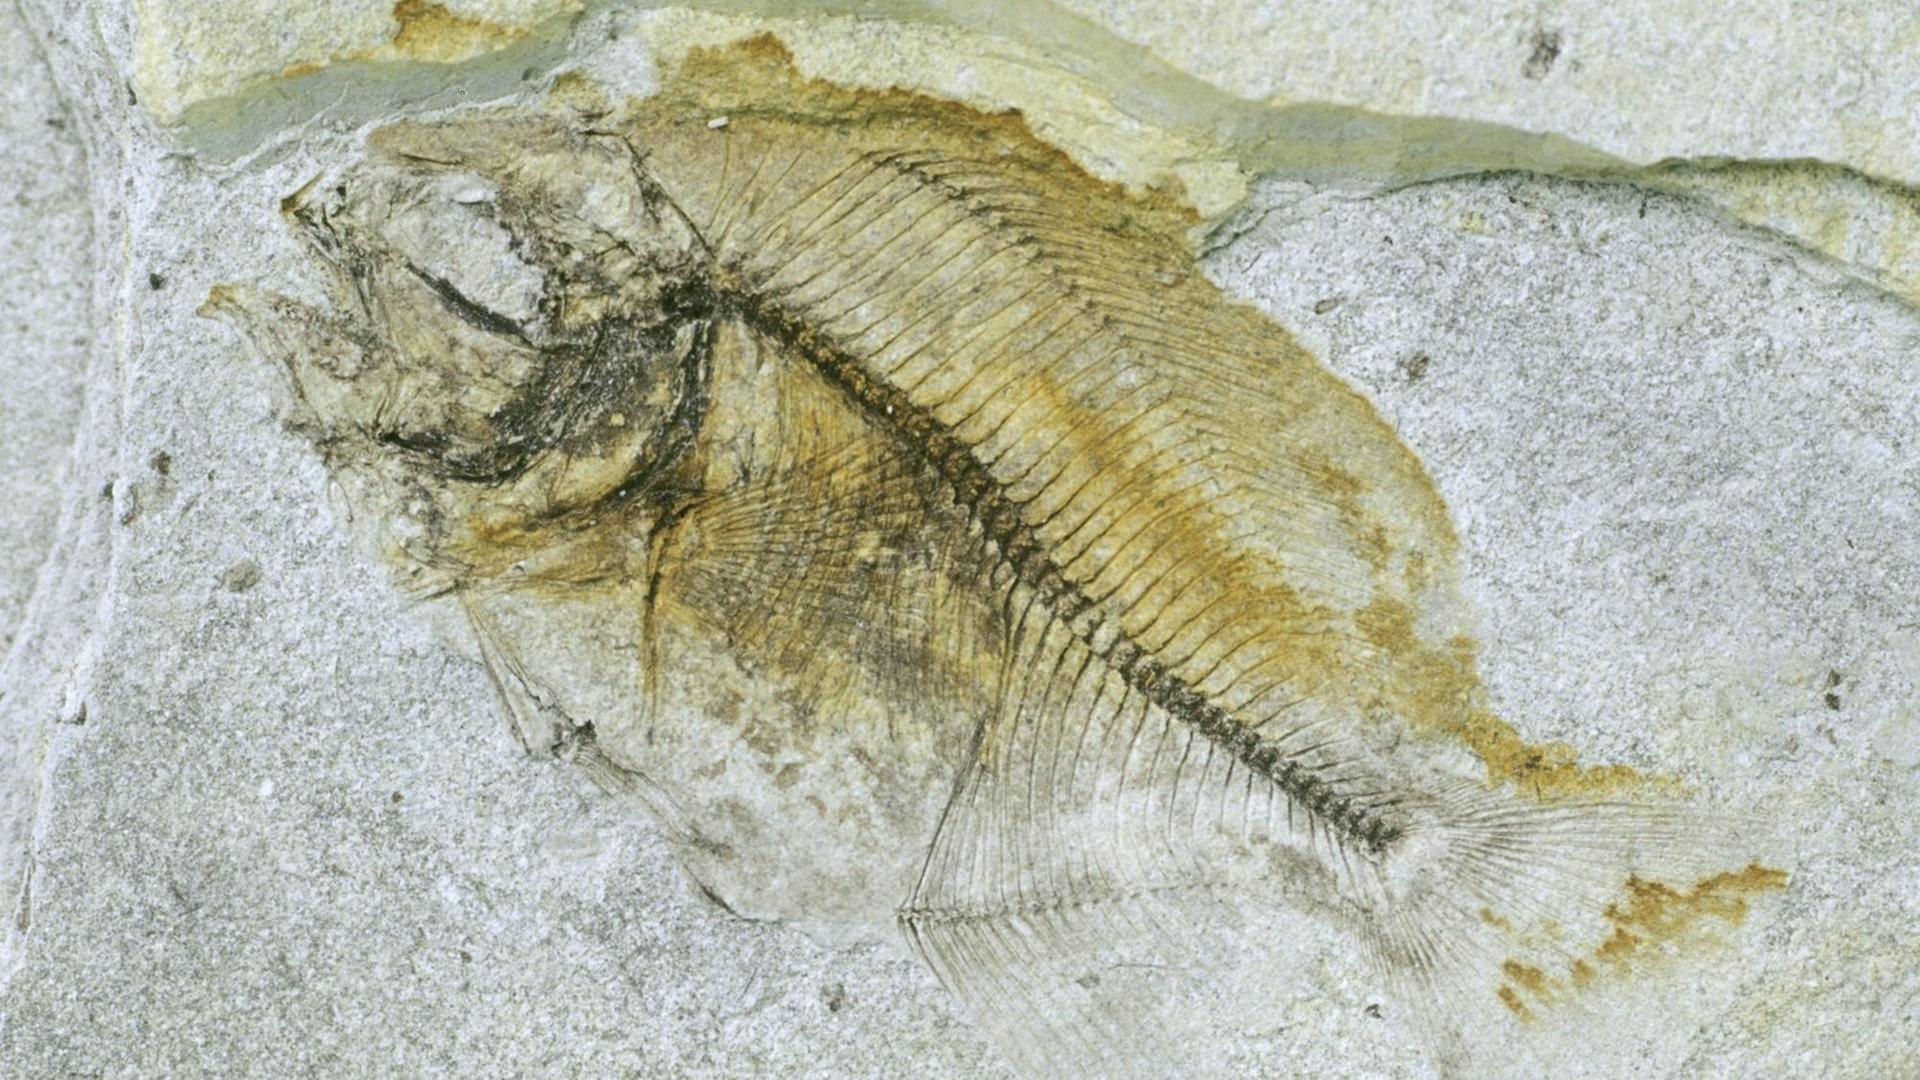 Fische hatten über Jahrmillionen Zeit, sich zu entwickeln - deutlich länger als wir Säugetiere. Hier sehen wir das Fossil eines Butter- beziehungsweise Messerfischs aus dem Palaeozän / Eozän